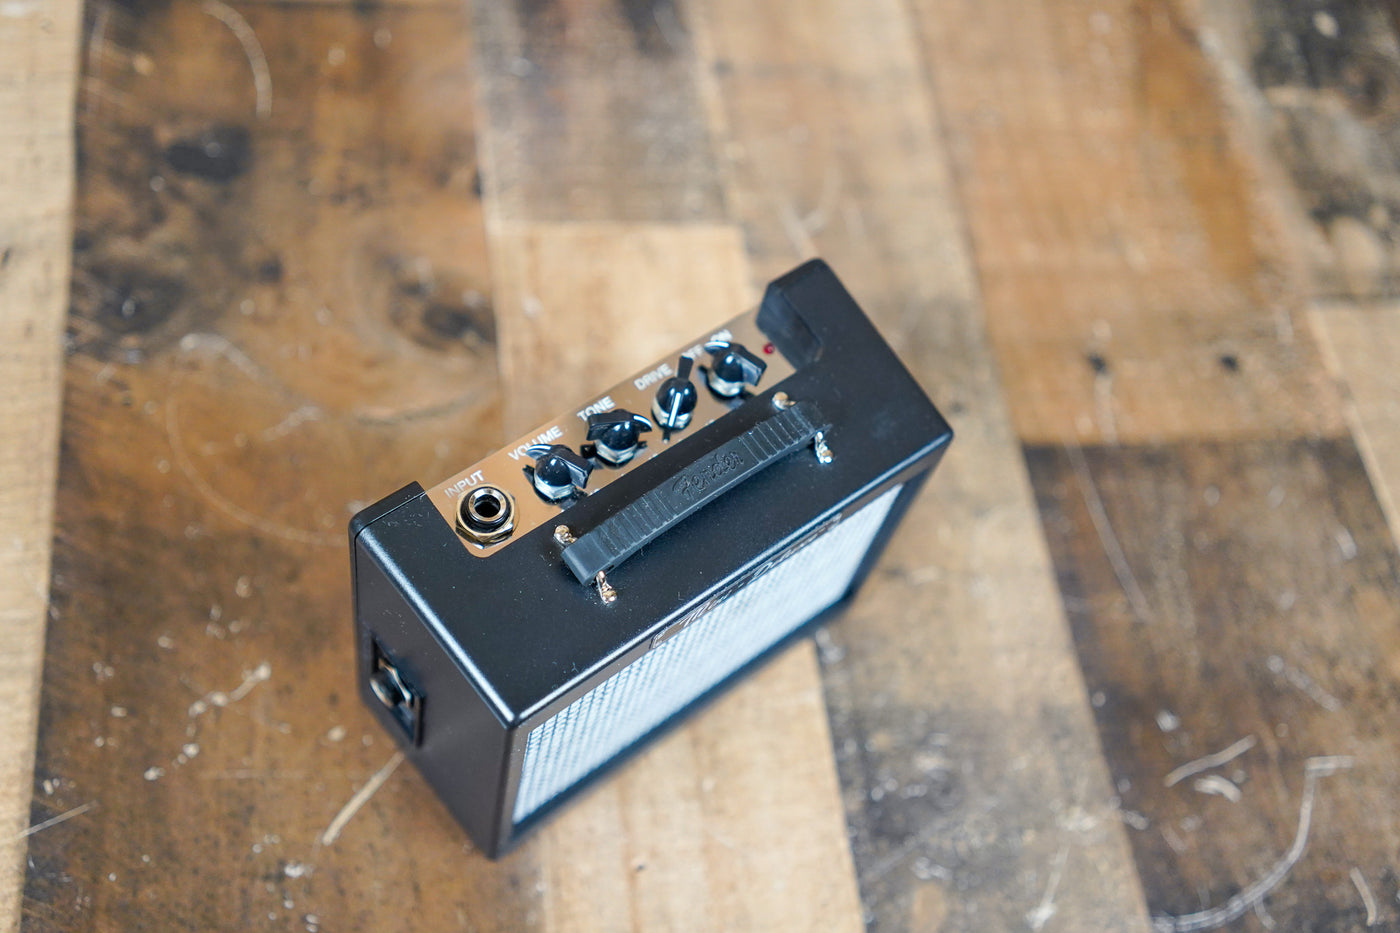 Fender MD20 Mini Deluxe Amplifier in Box